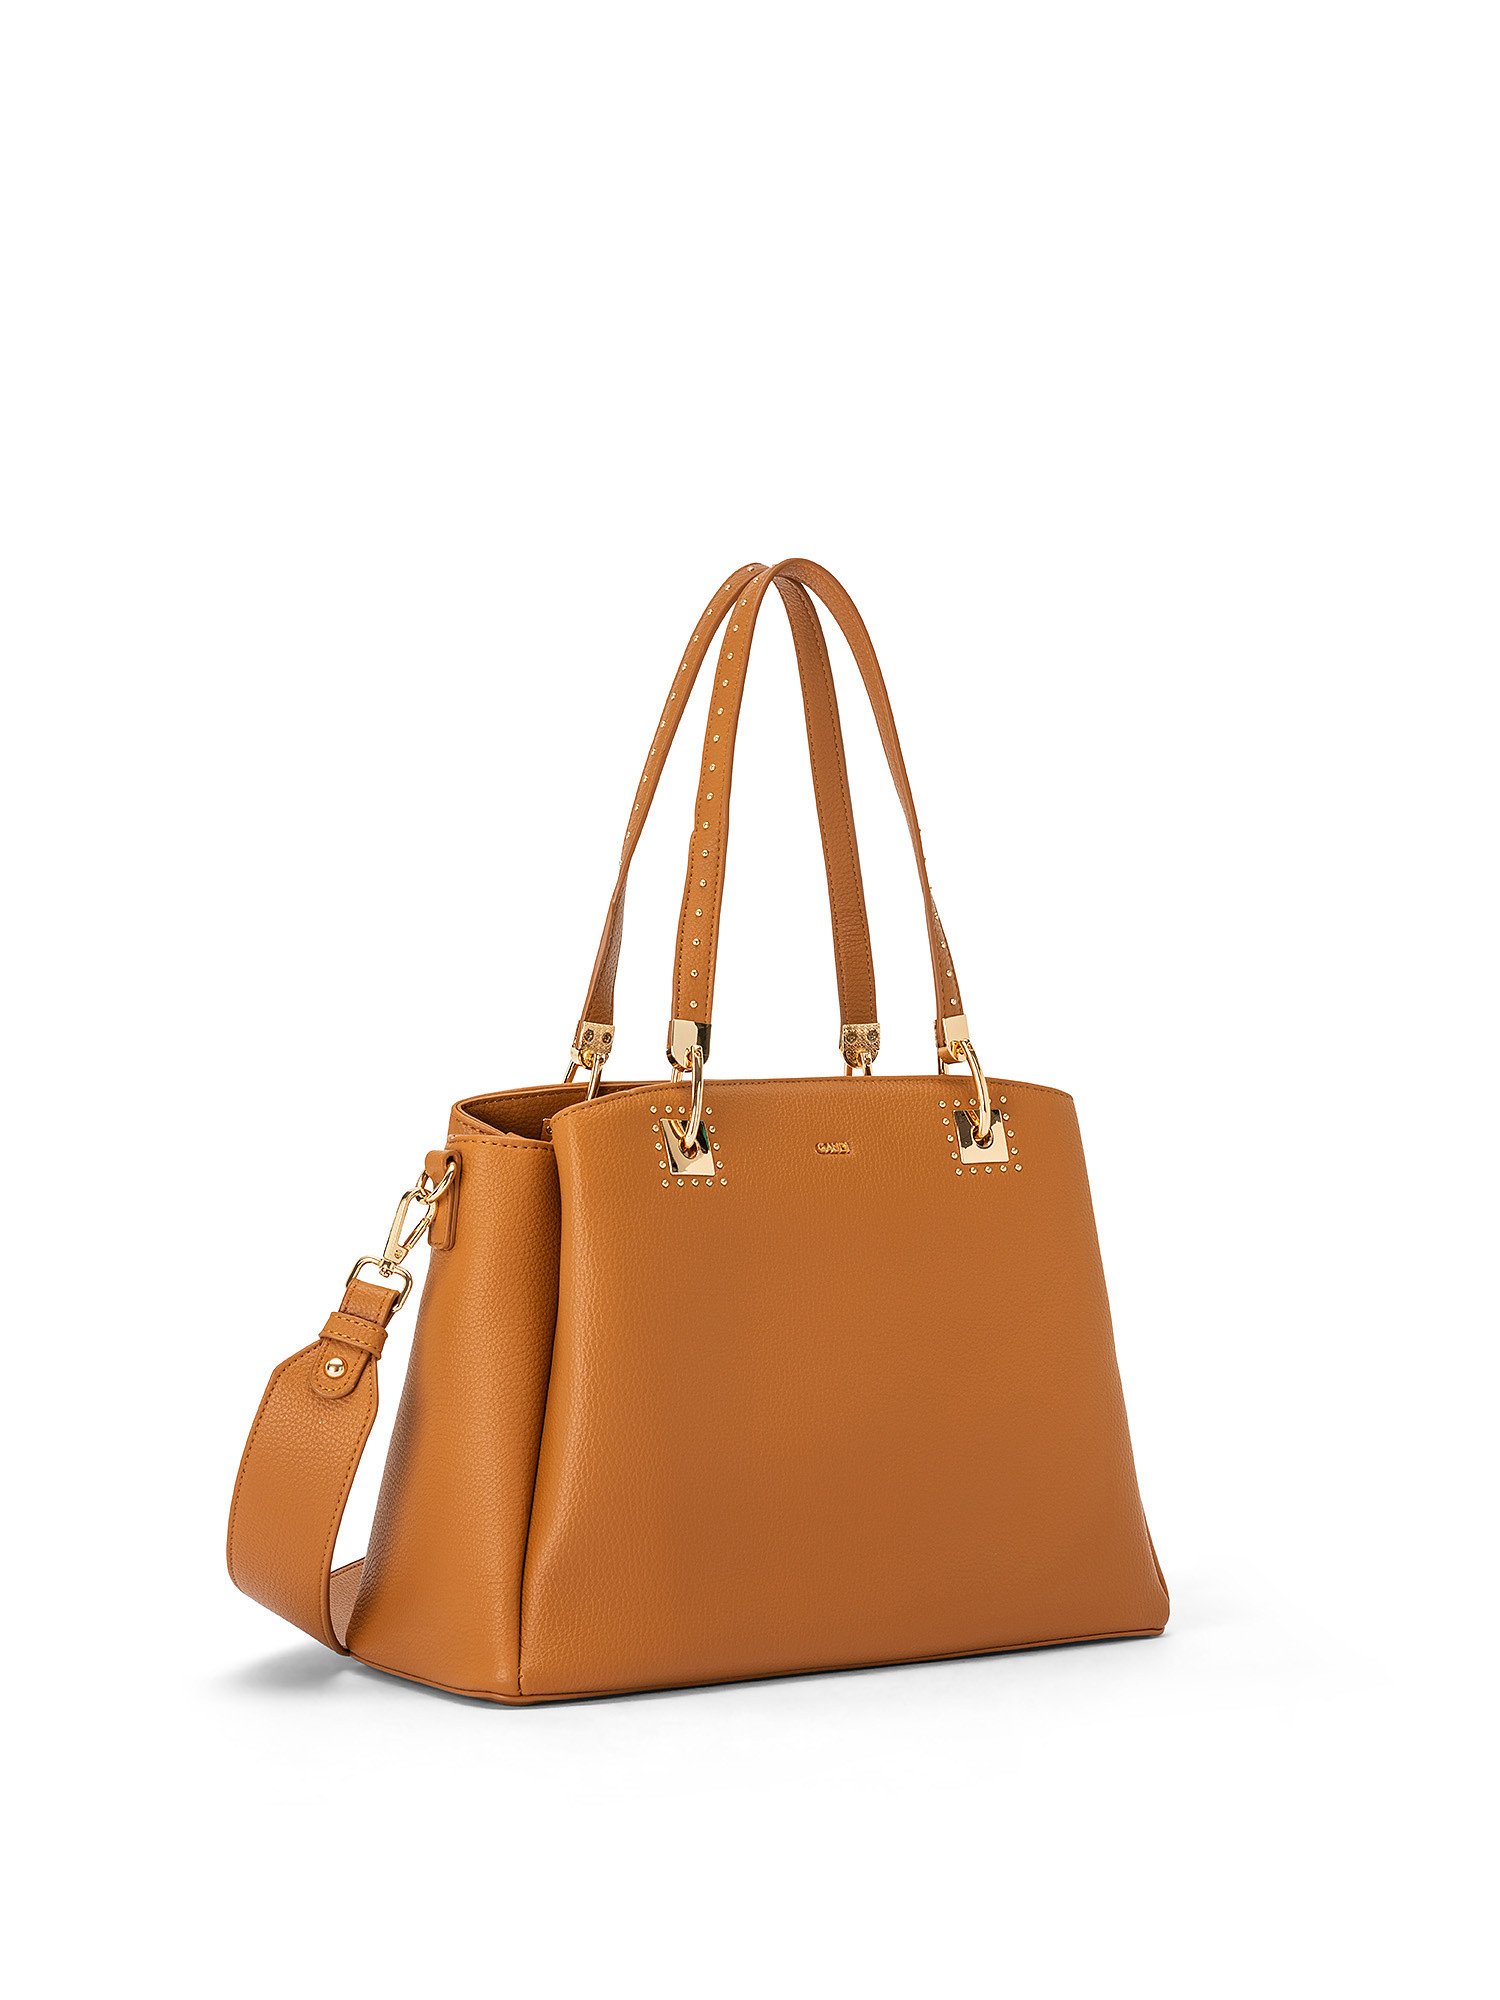 Gaudì - Shopping bag Aurora, Brown, large image number 1